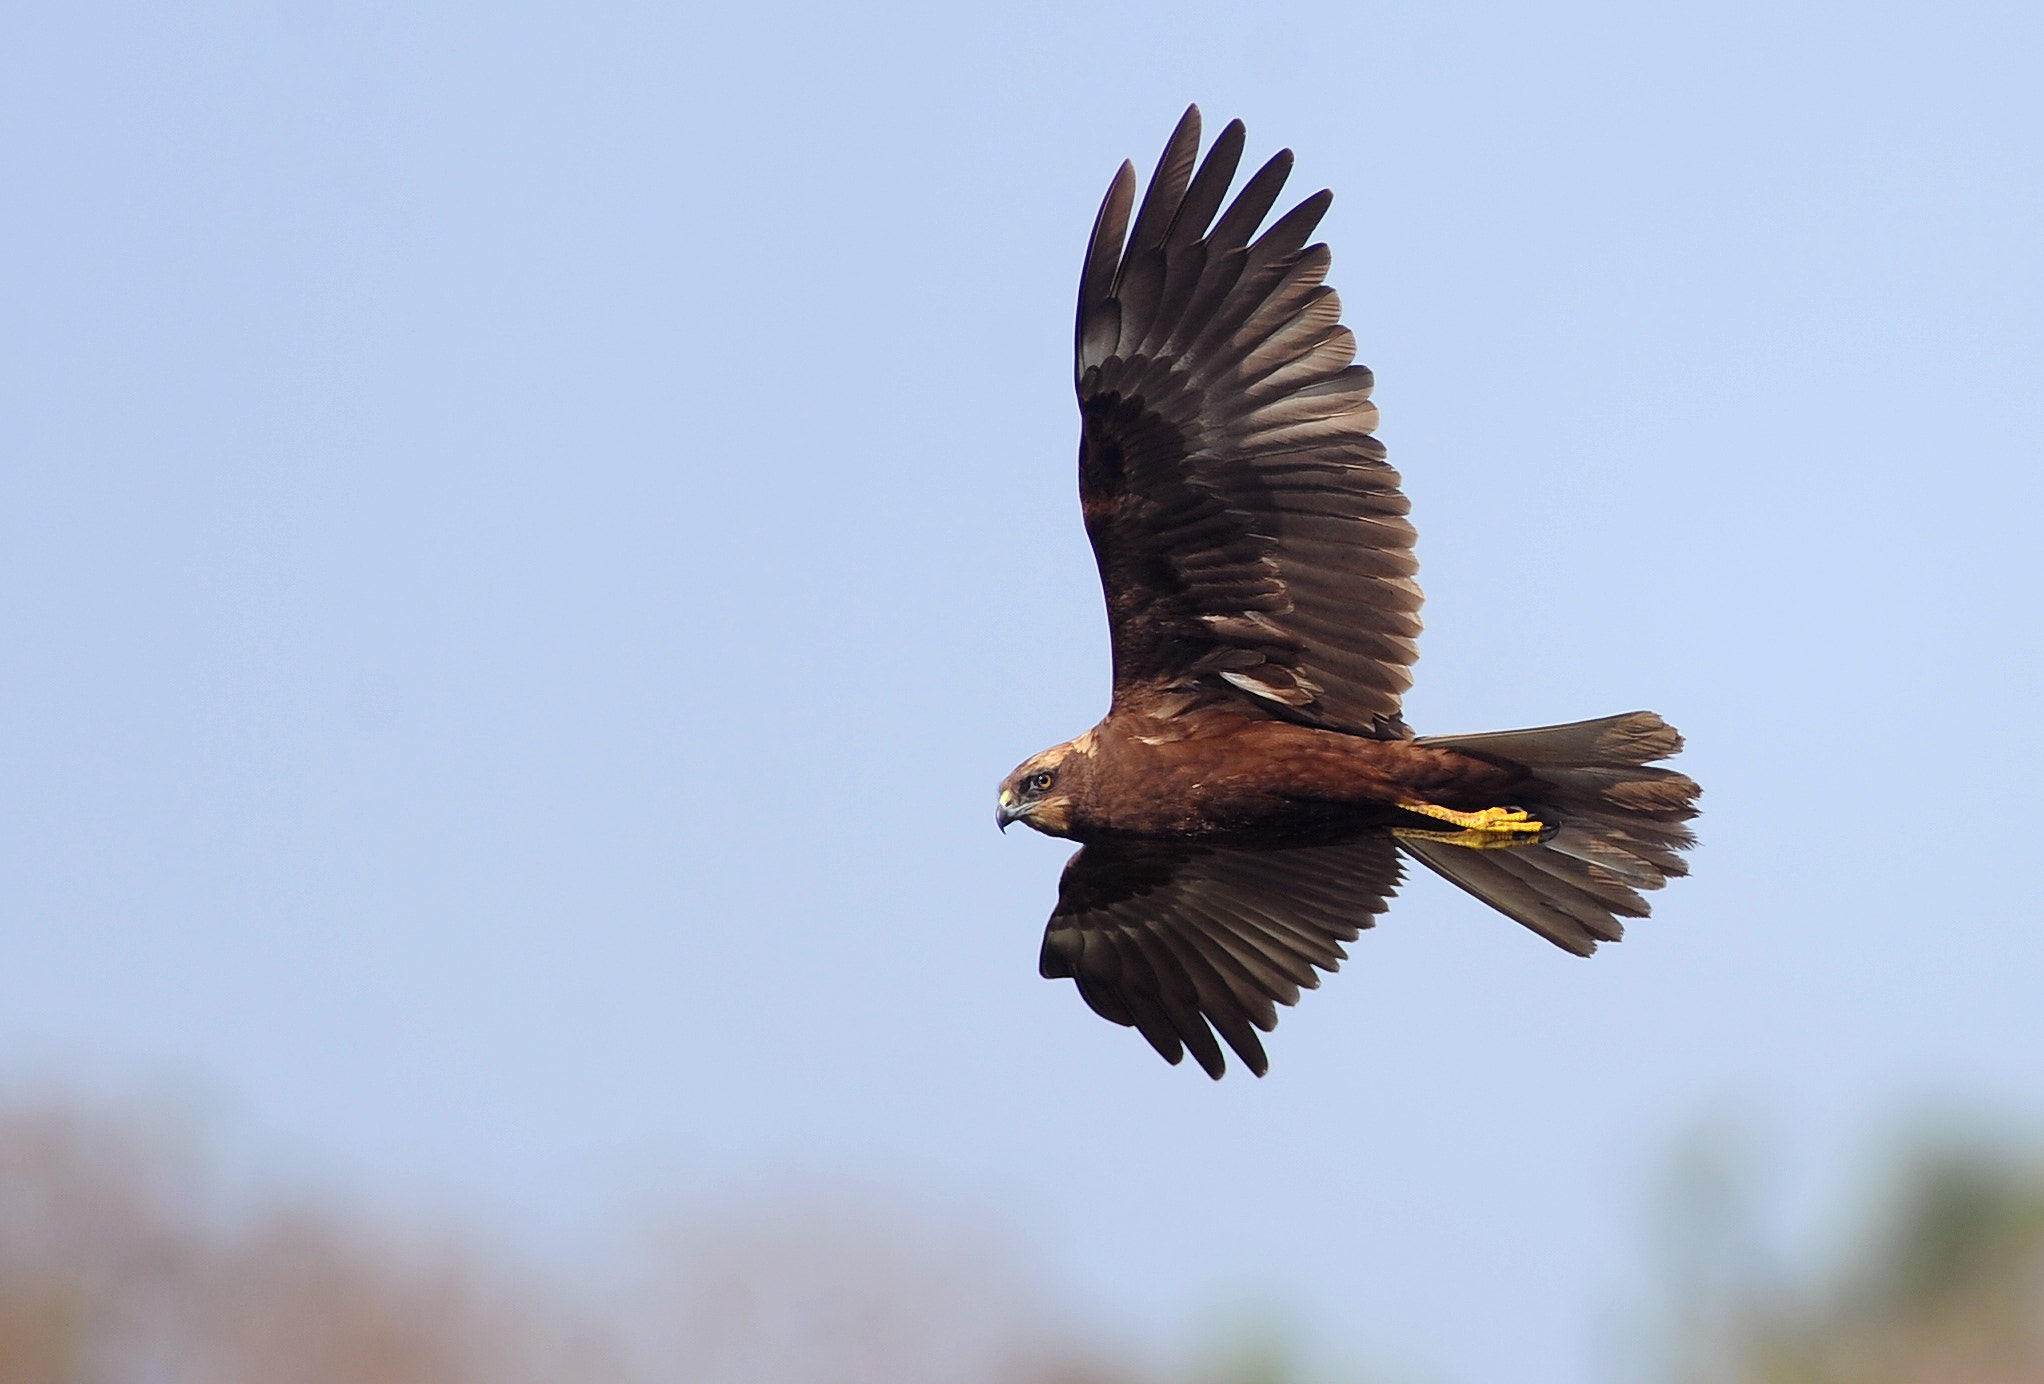 Tokina AT-X 304 AF (AF 300mm f/4.0) sample photo. Flight brahmi kite photography